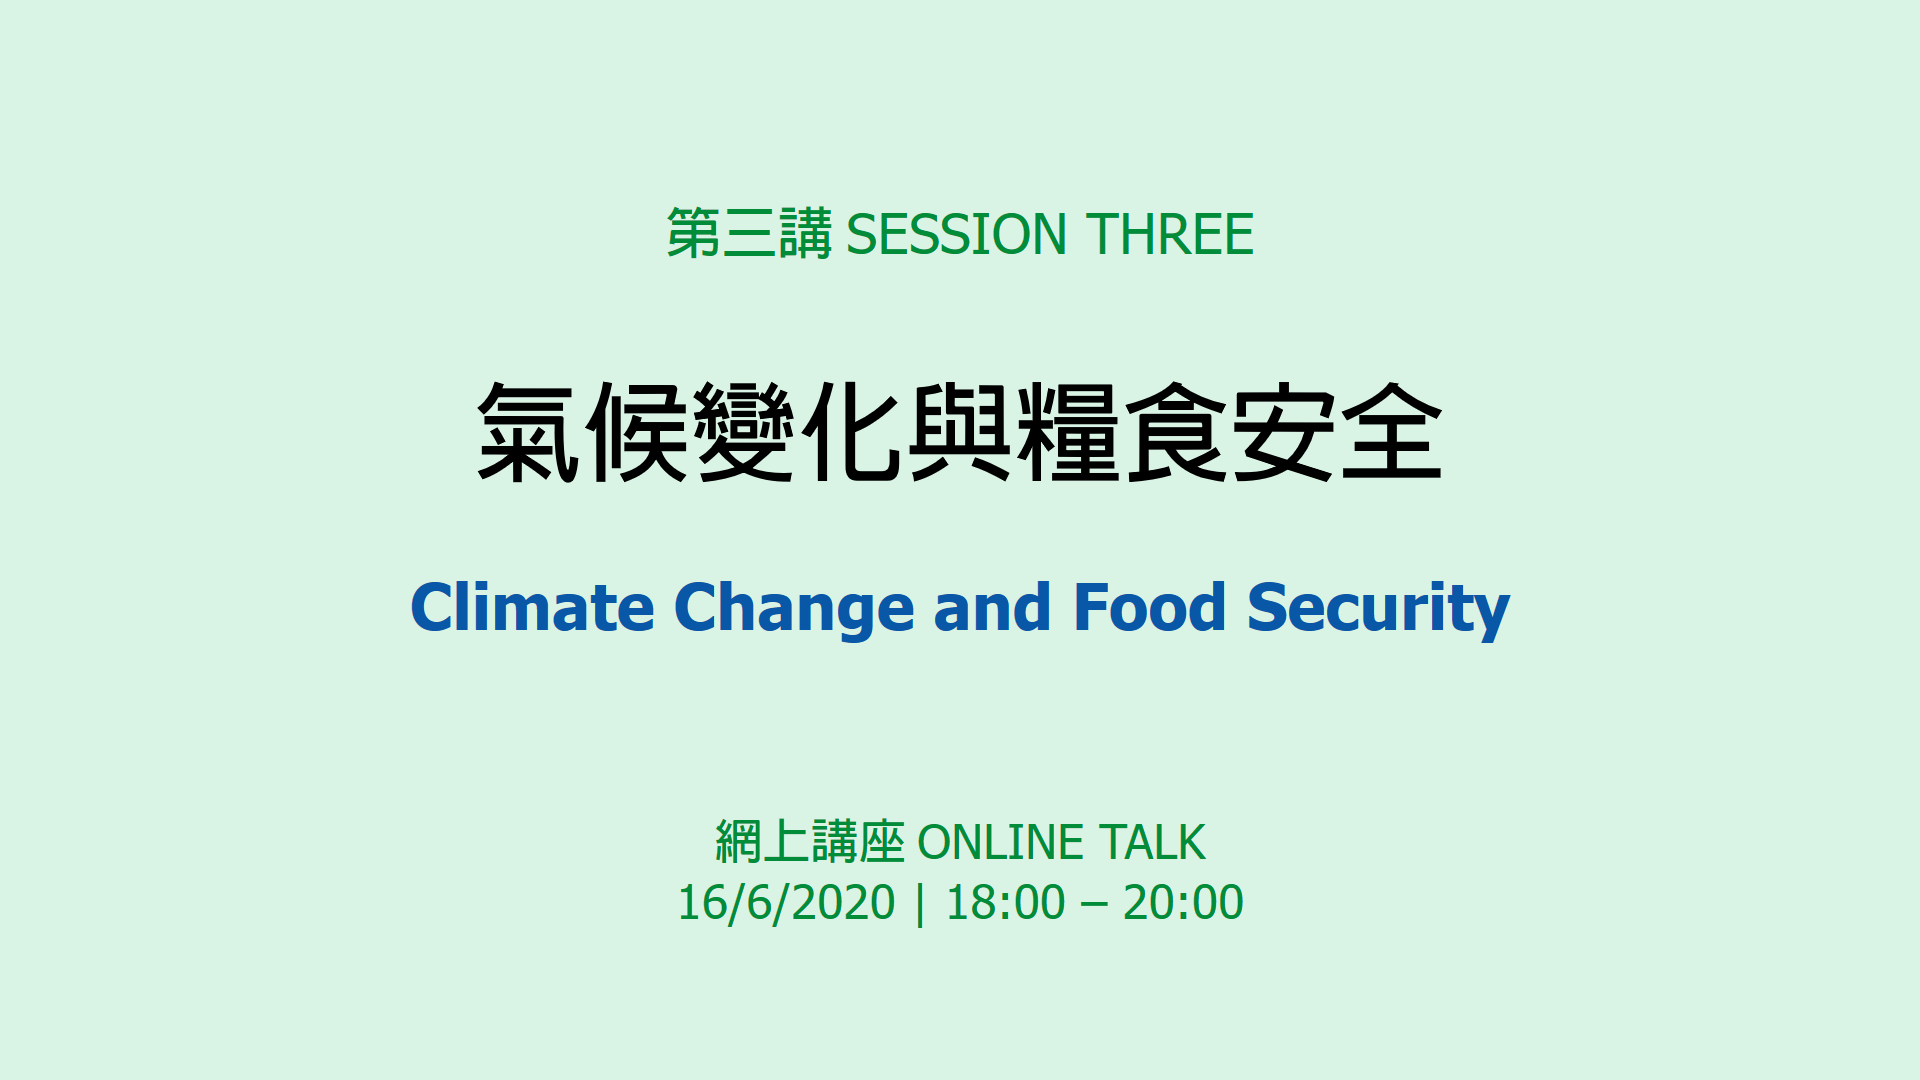 SDSNHK X GE SDG Forum 202006 session 3 Web Banner v1